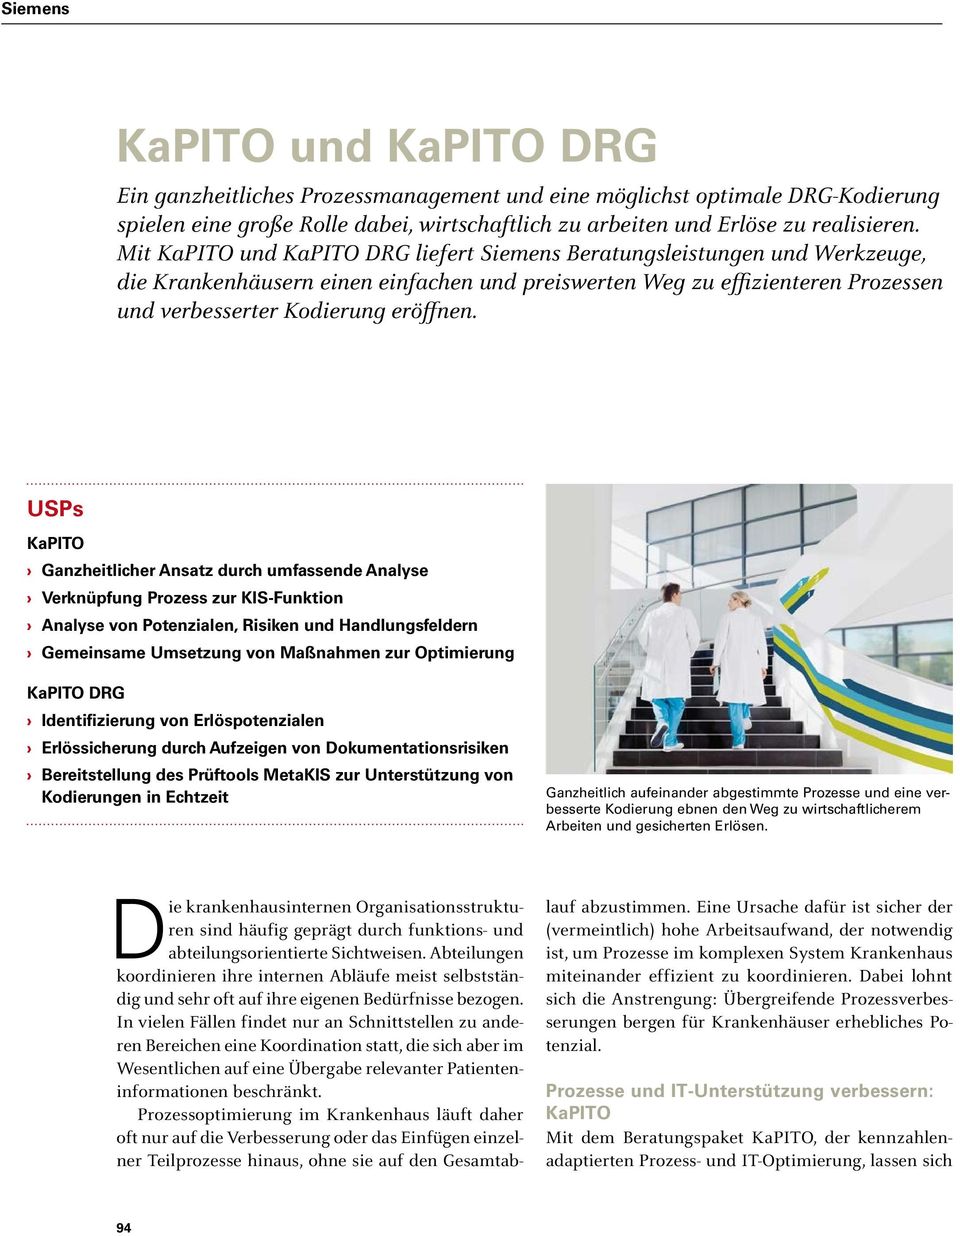 USPs KaPITO Ganzheitlicher Ansatz durch umfassende Analyse Verknüpfung Prozess zur KIS-Funktion Analyse von Potenzialen, Risiken und Handlungsfeldern Gemeinsame Umsetzung von Maßnahmen zur